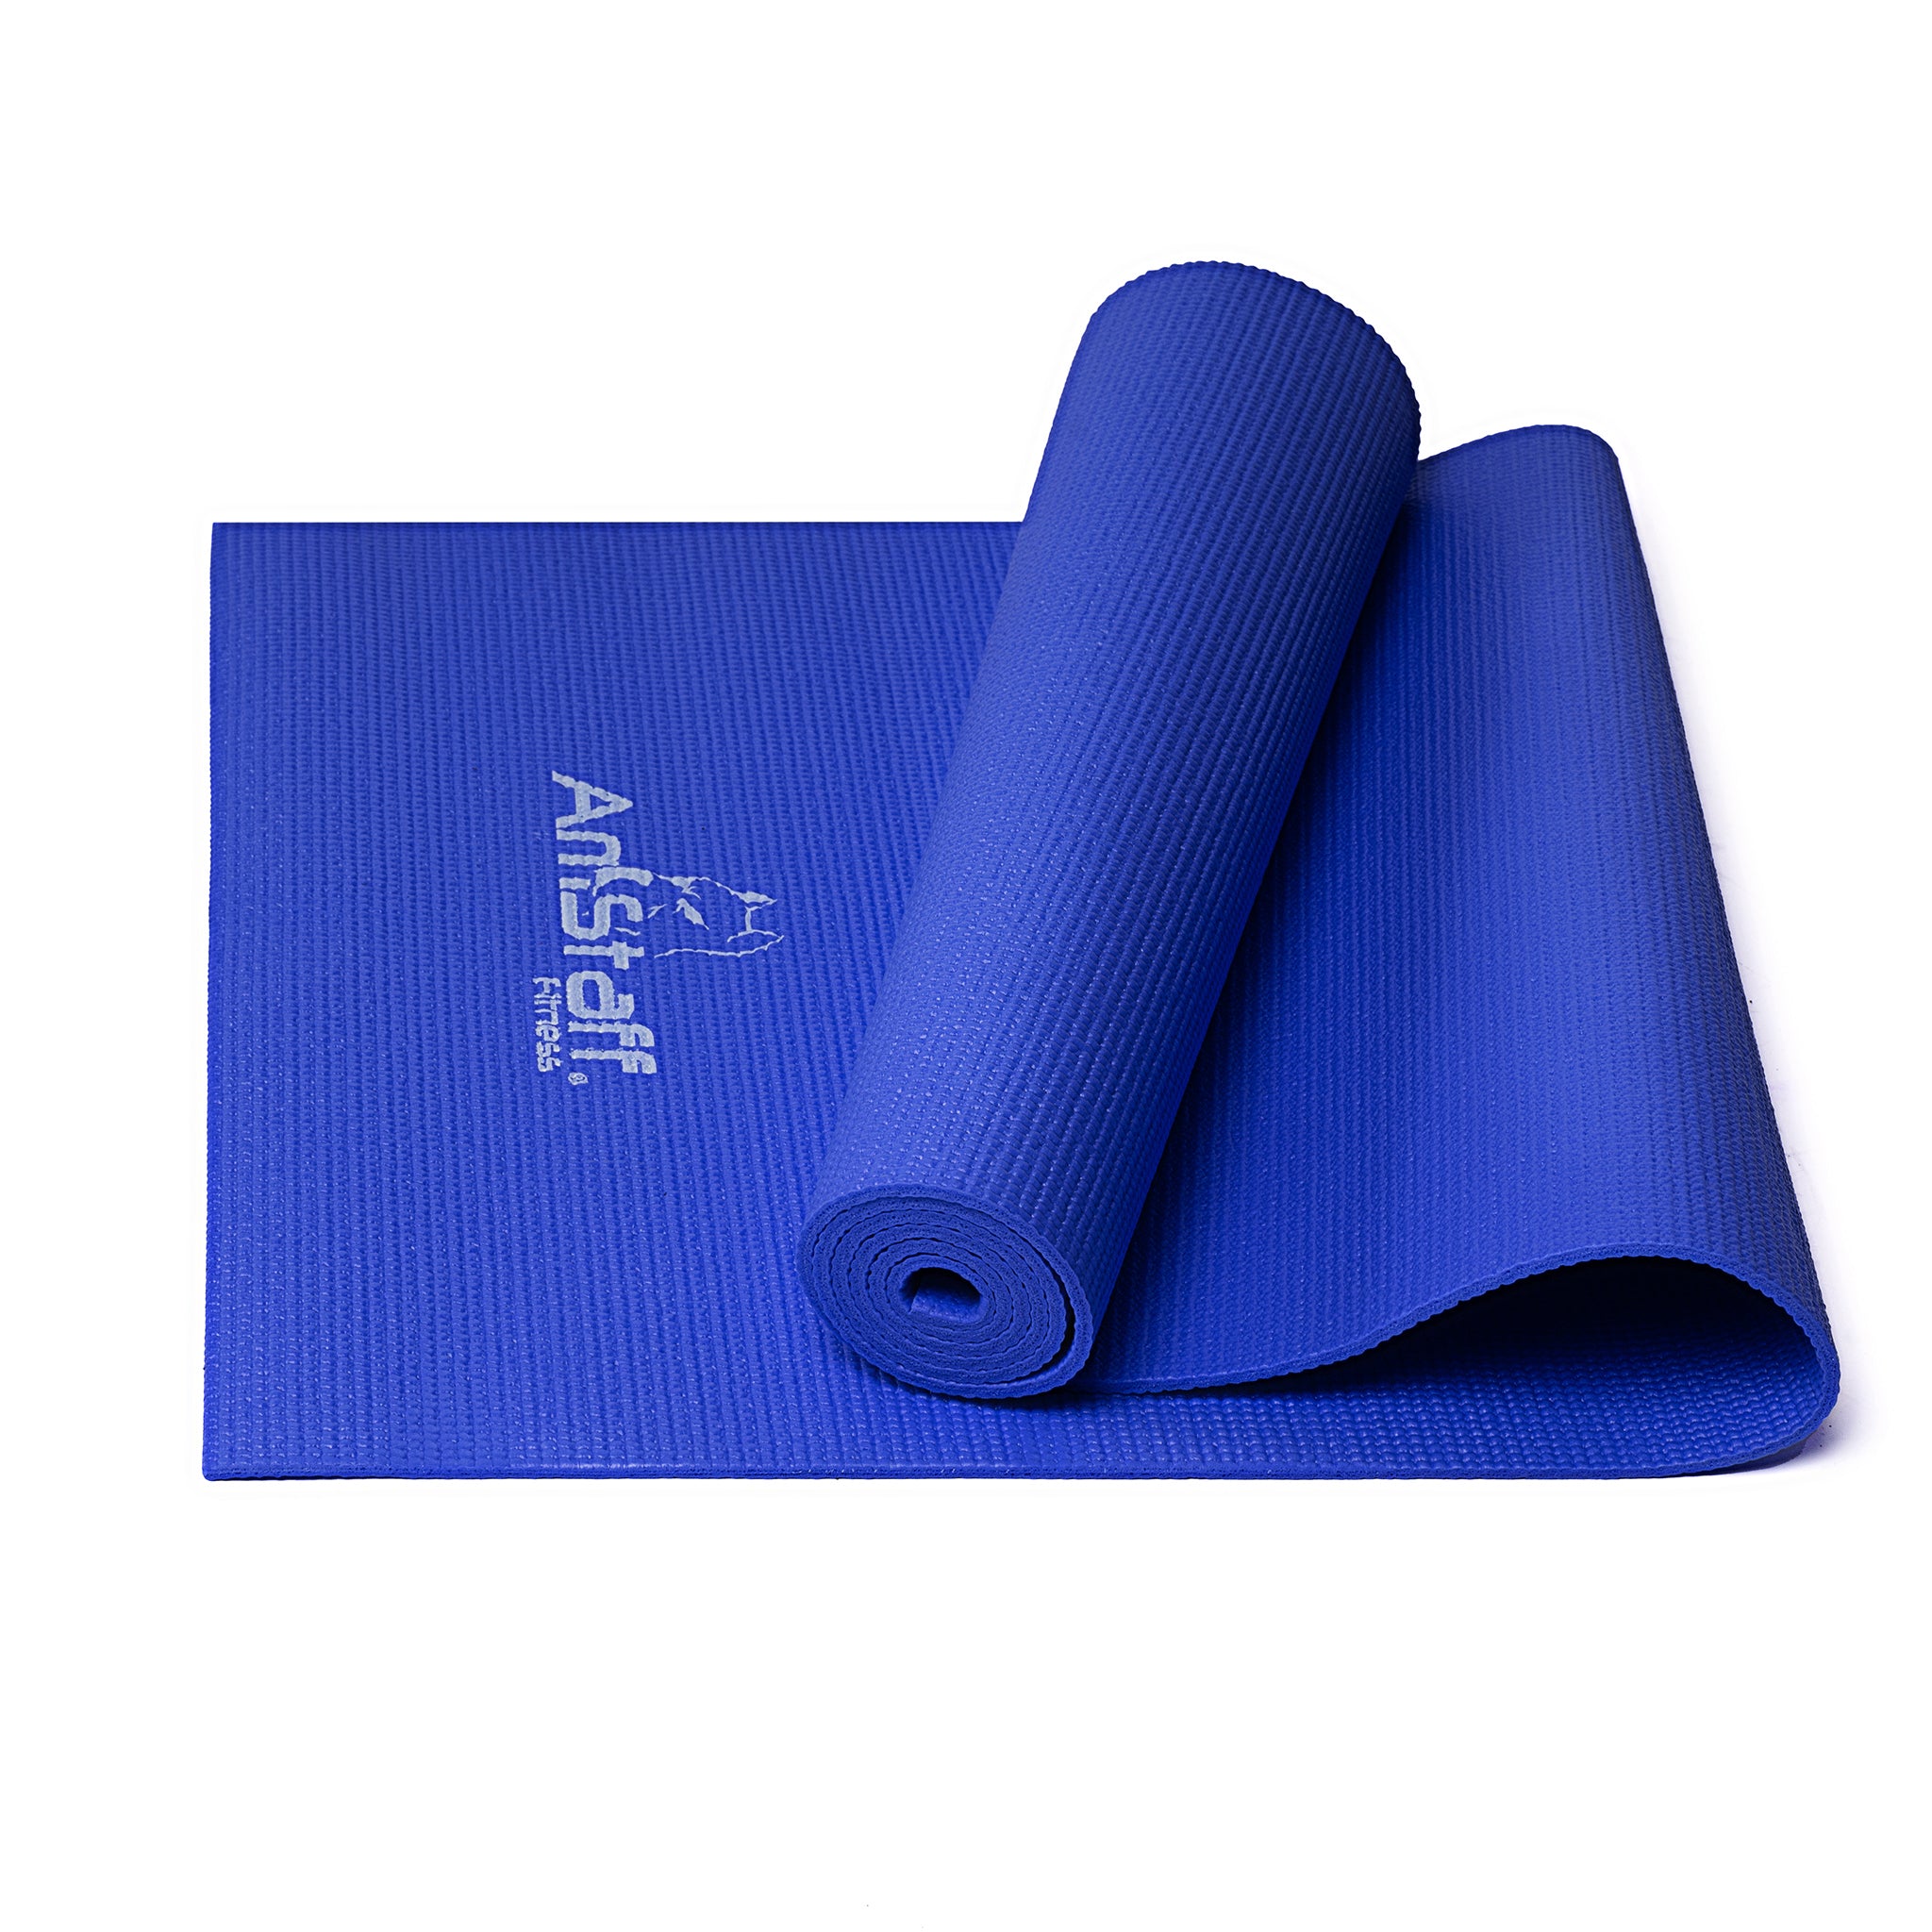 68” x 24” PVC Yoga & Pilates Mat – Fitness Avenue